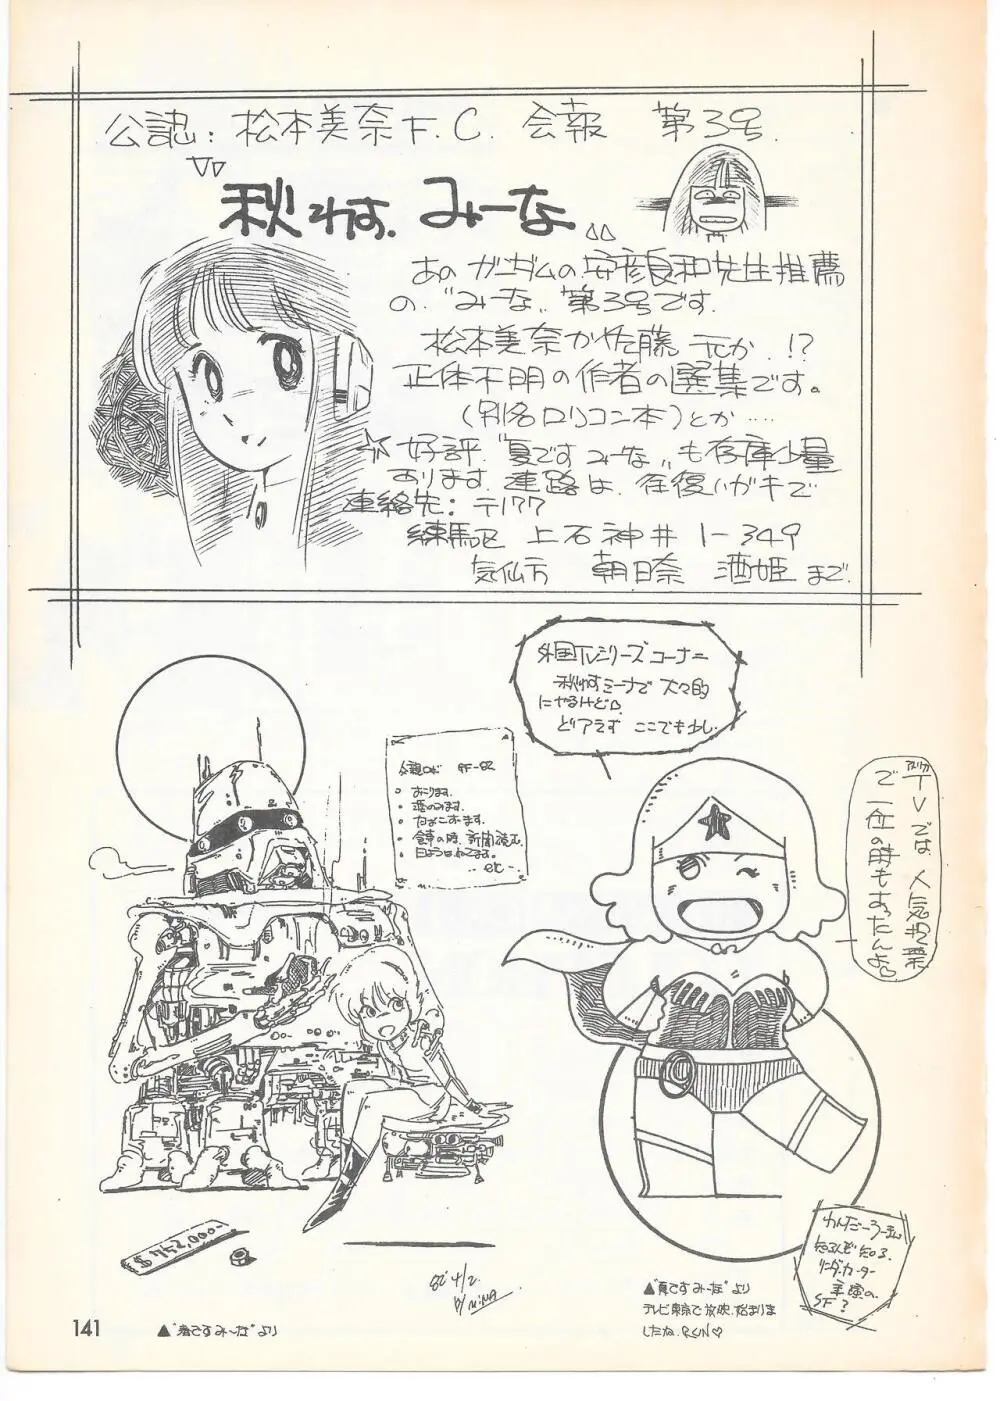 THE ANIMATOR 1 金田伊功特集号 136ページ